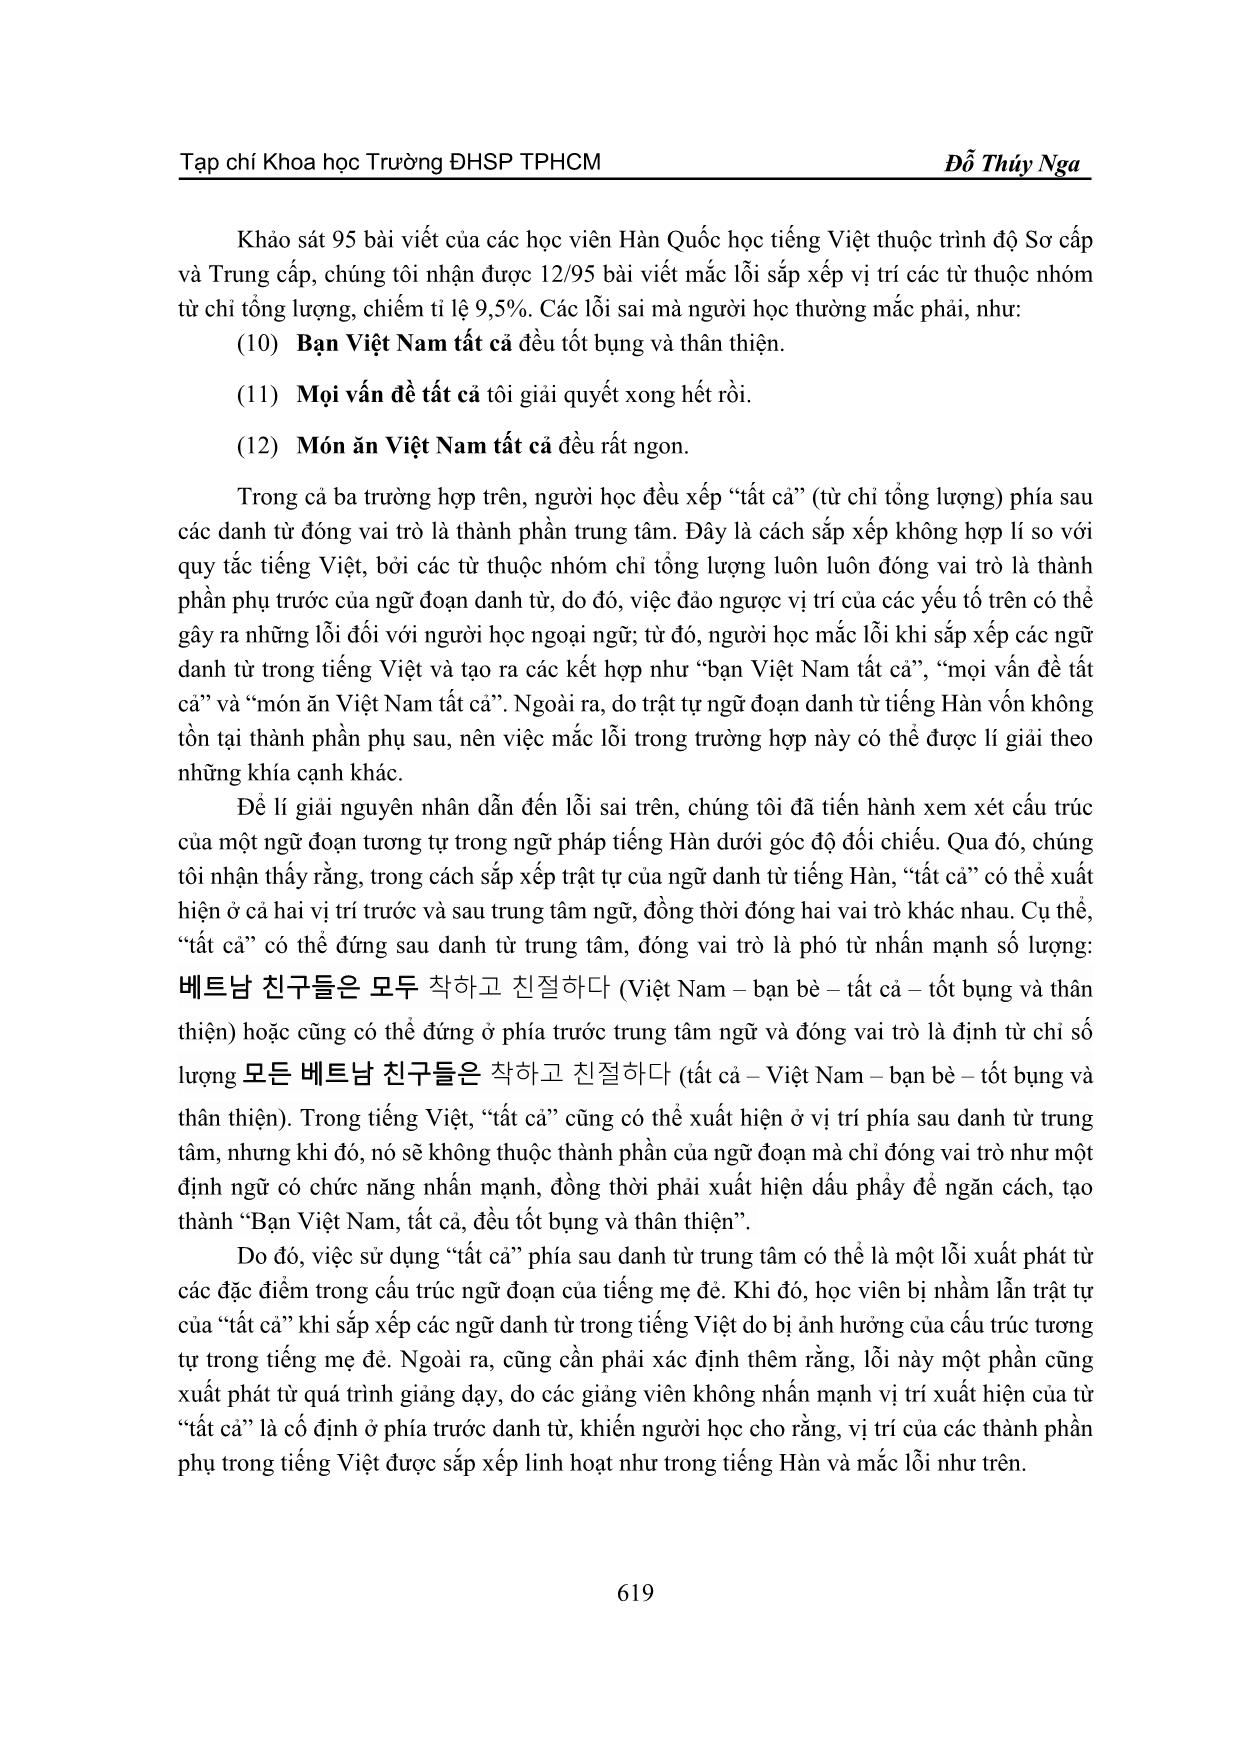 Lỗi sắp xếp trật tự trong ngữ đoạn danh từ của người Hàn quốc học Tiếng Việt trang 6